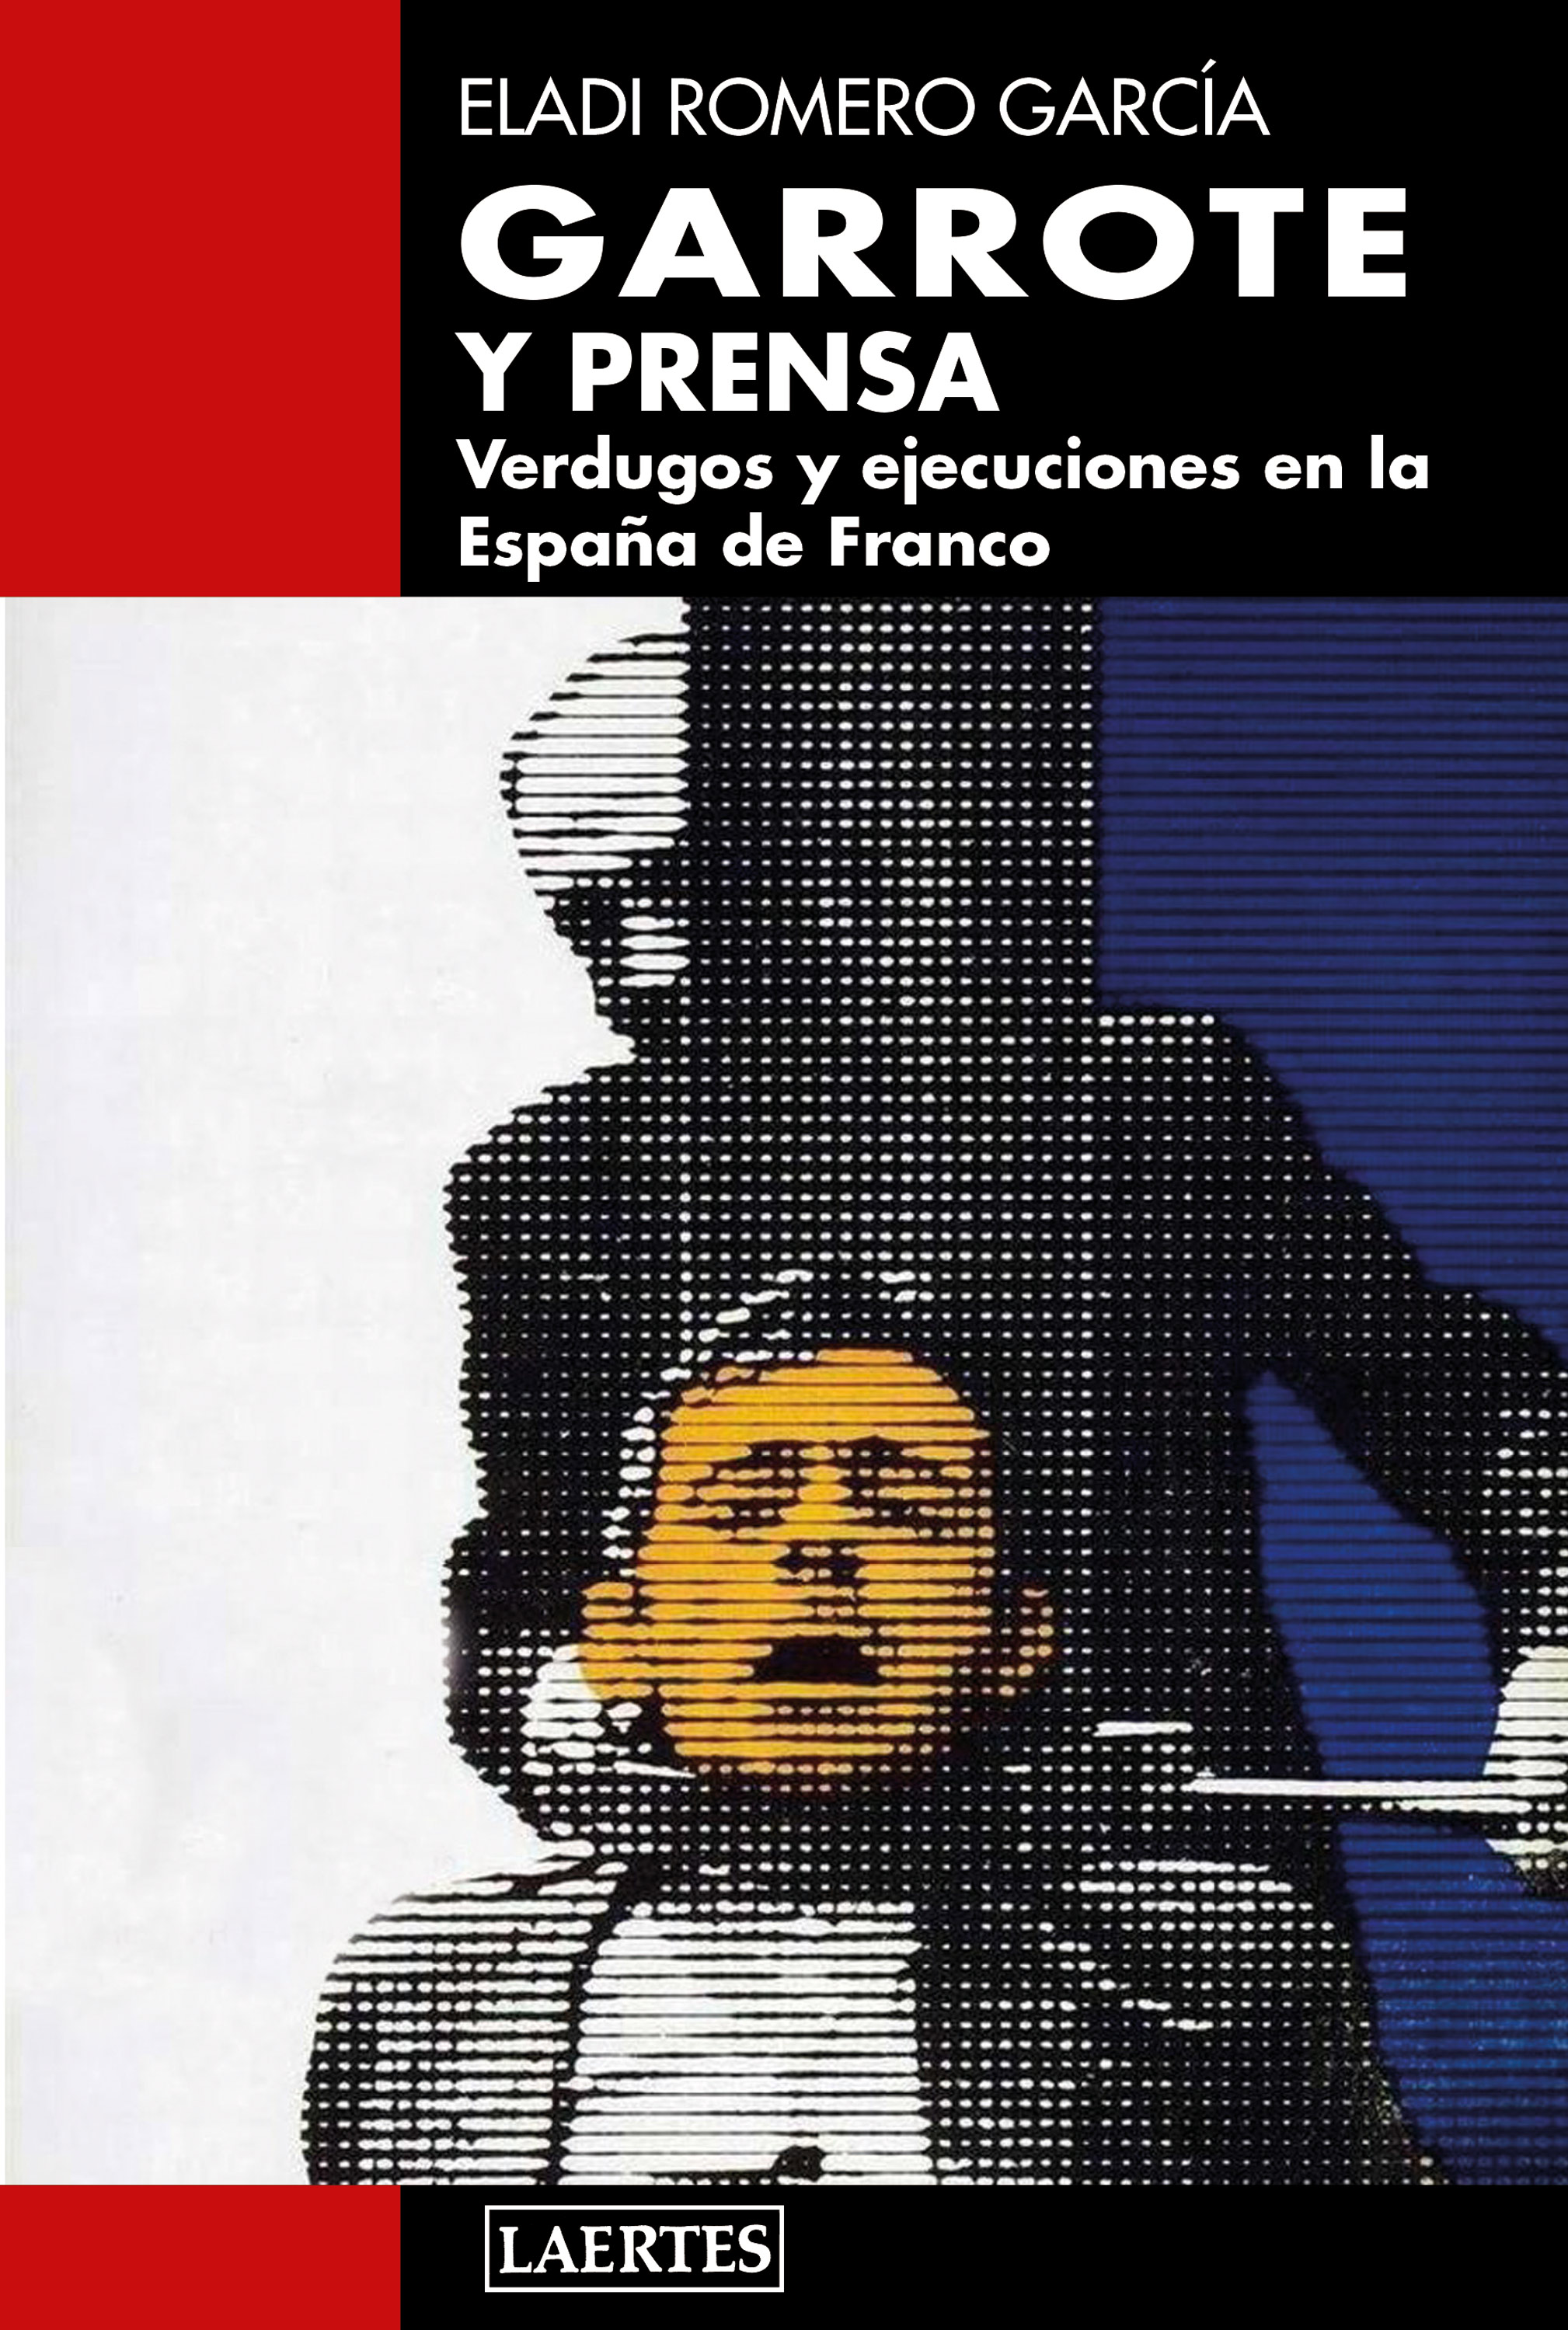 GARROTE Y PRENSA «VERDUGOS Y EJECUCIONES EN LA ESPAÑA DE FRANCO»